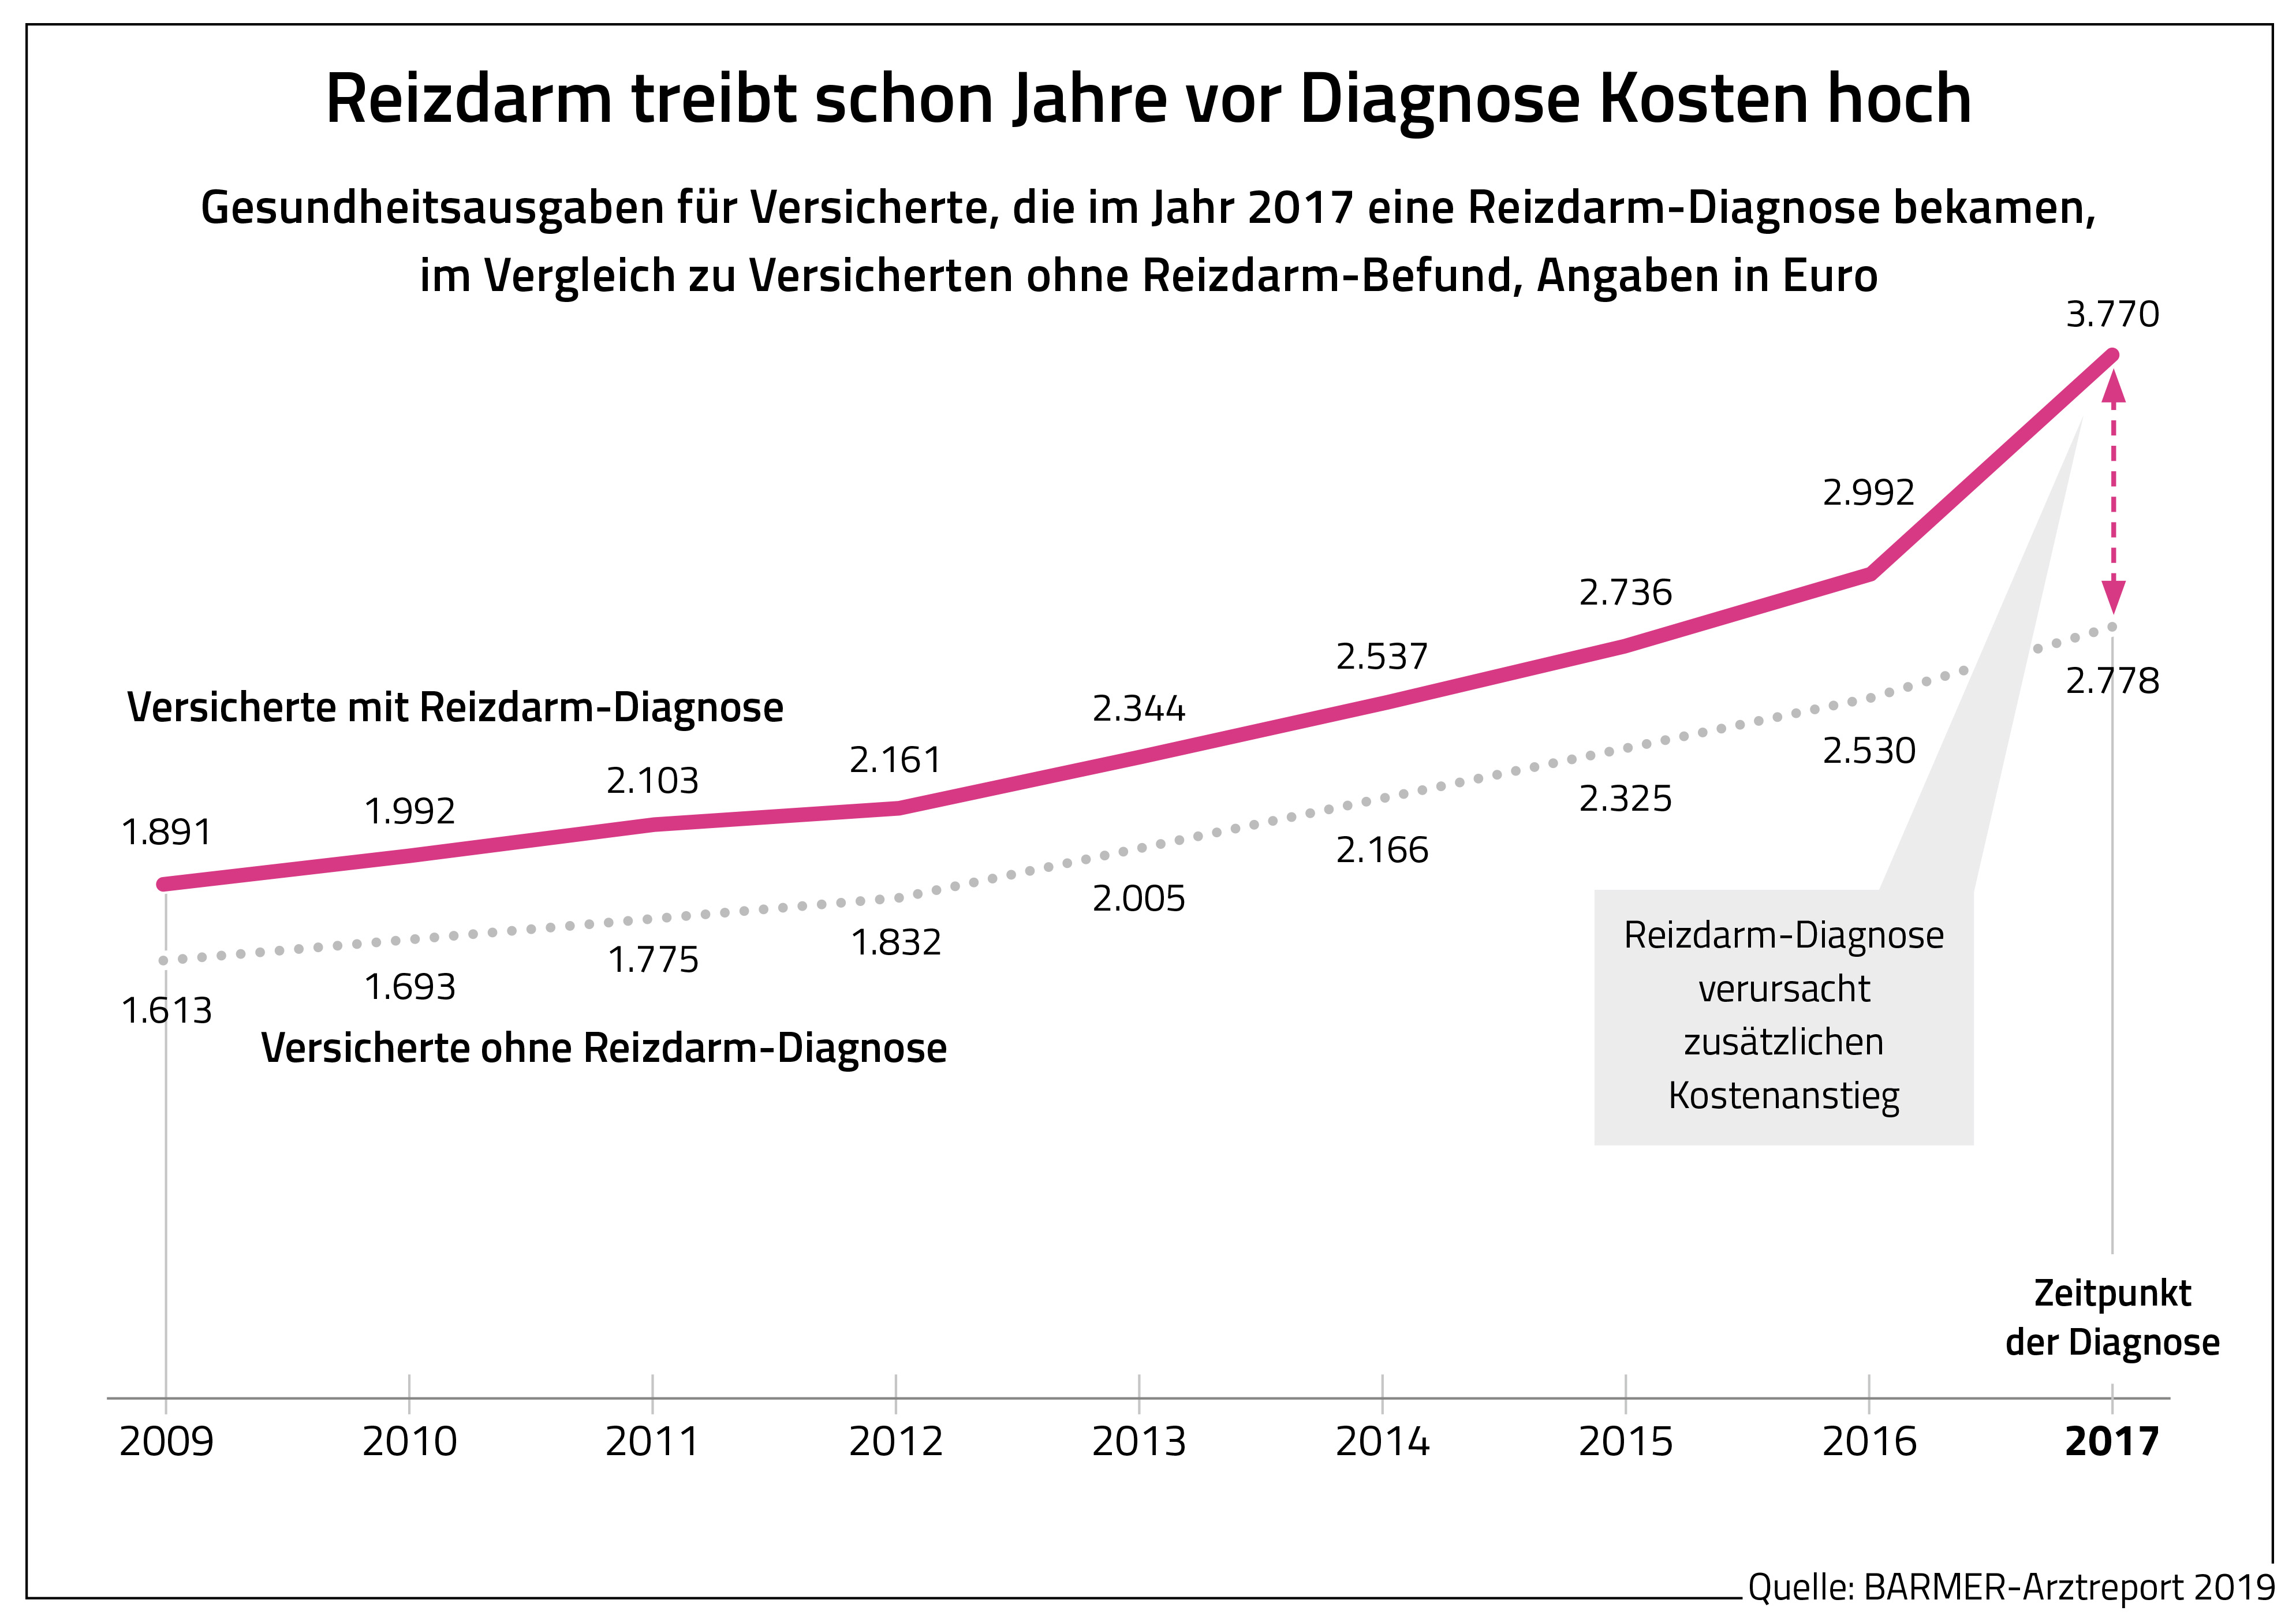 Die Grafik zeigt die Gesundheitsausgaben für Versicherte, die im Jahr 2017 eine Reizdarm-Diagnose bekamen, Angaben in Euro.